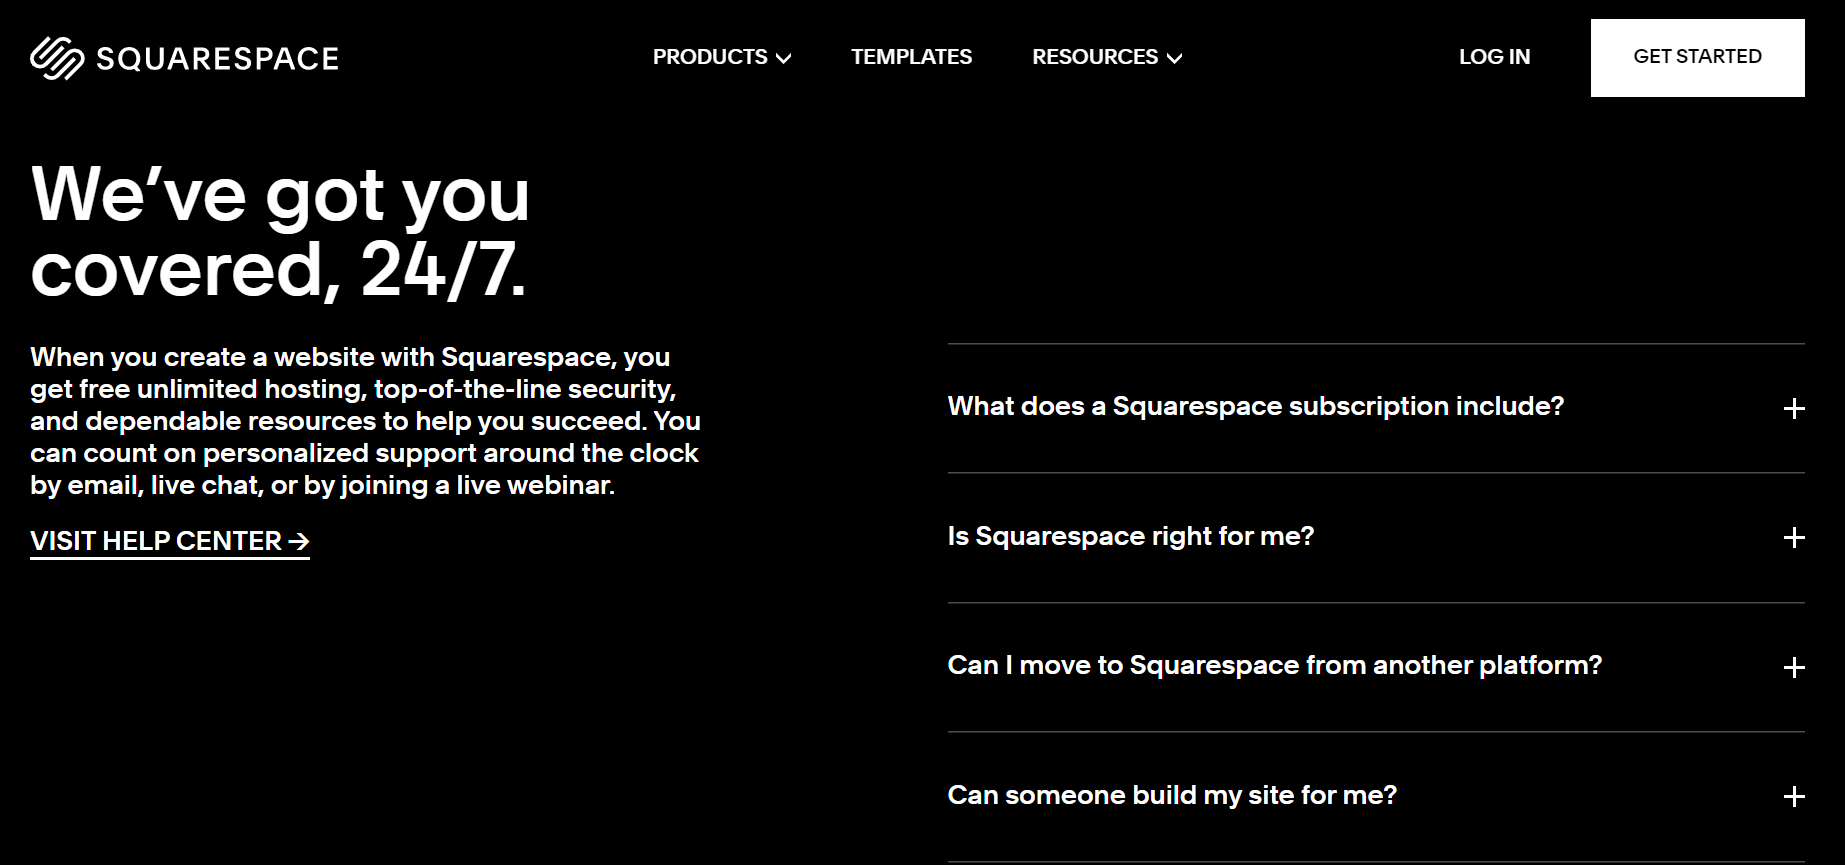 O Squarespace usando perguntas frequentes na sua landing page